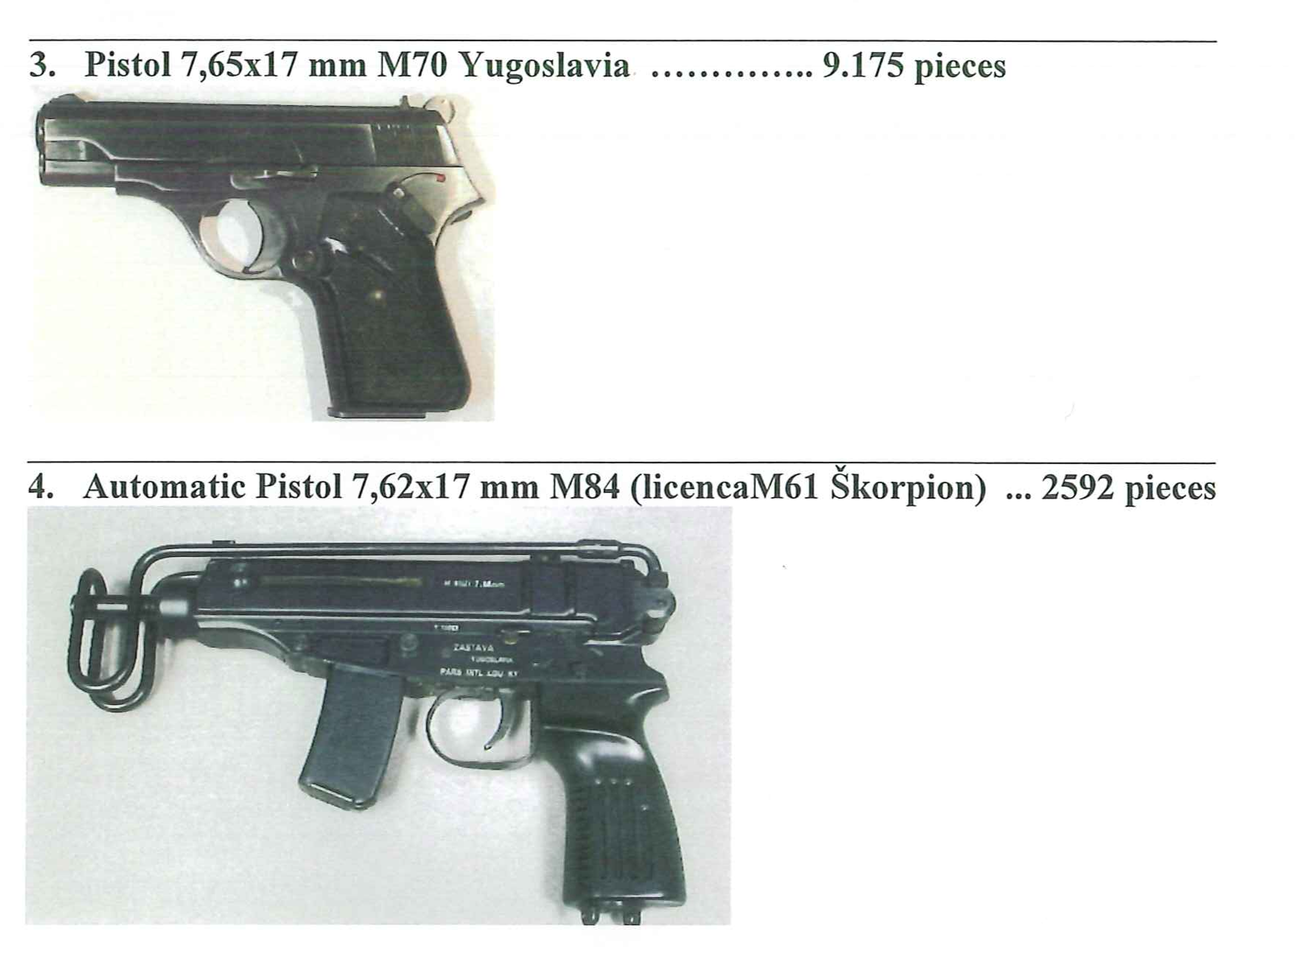 Vid en husrannsakan hittade polisen material som beslagtogs, bland annat bilder på olika vapen.